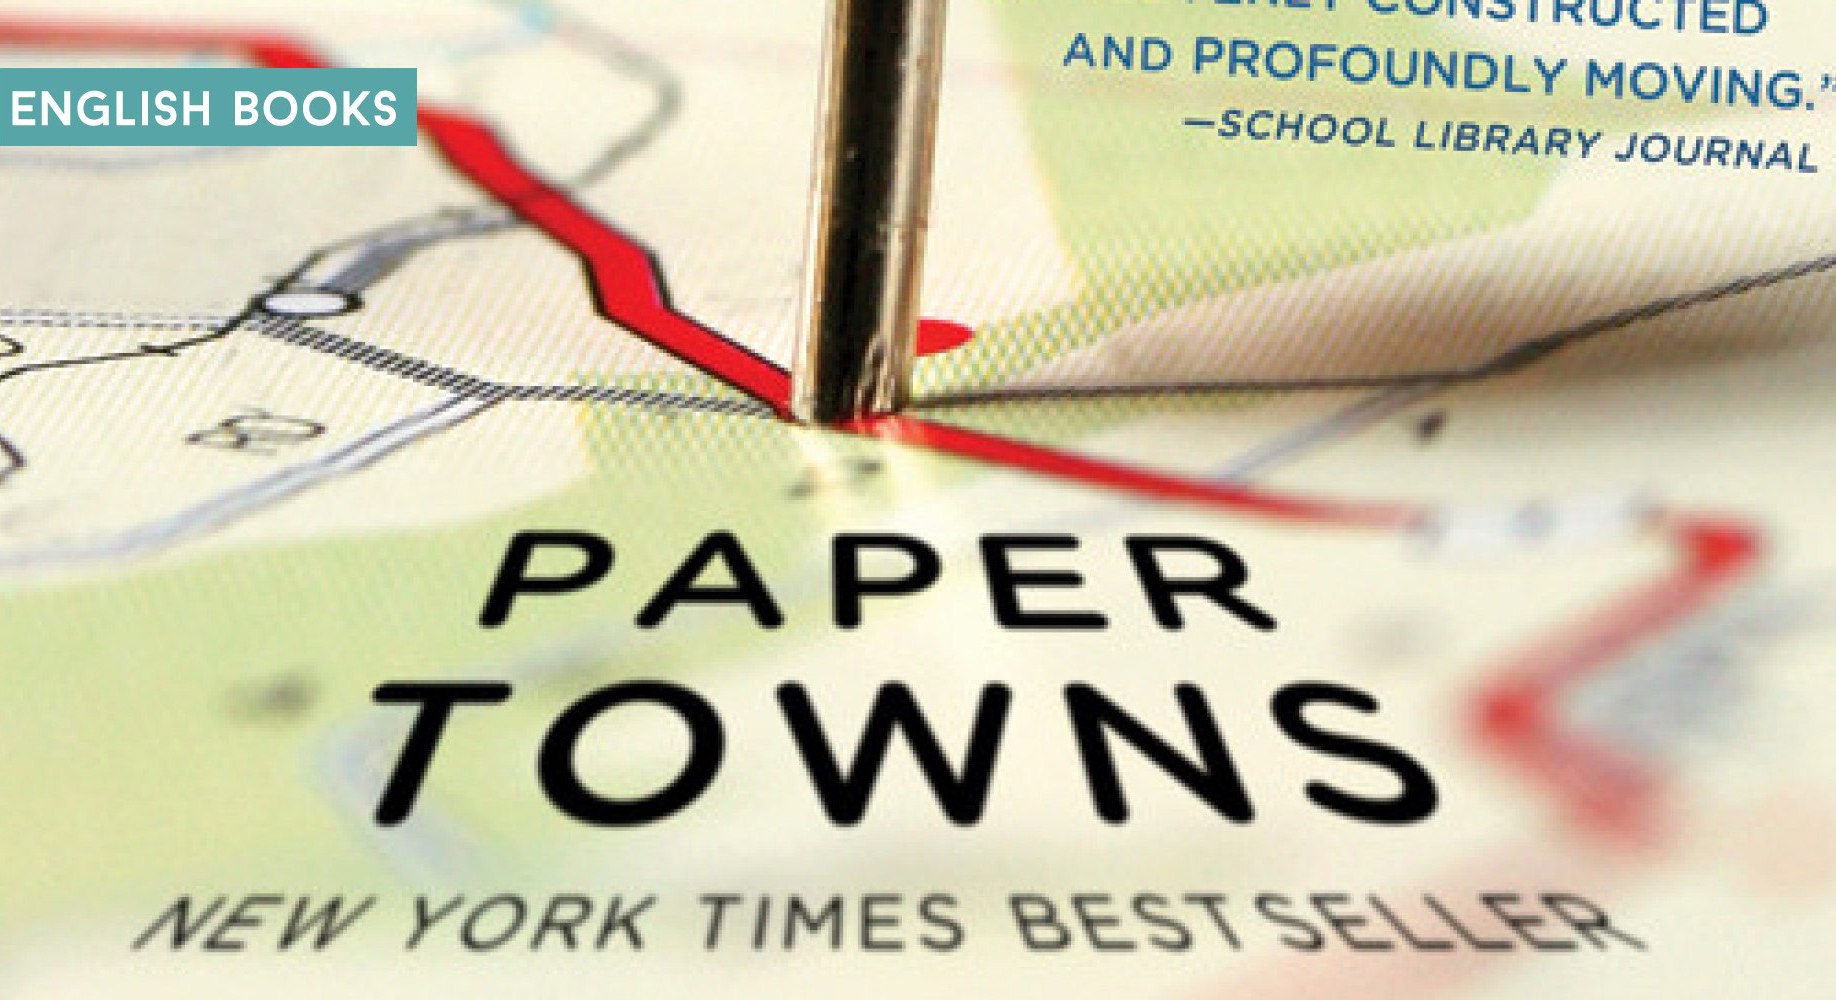 John Green — Paper Towns